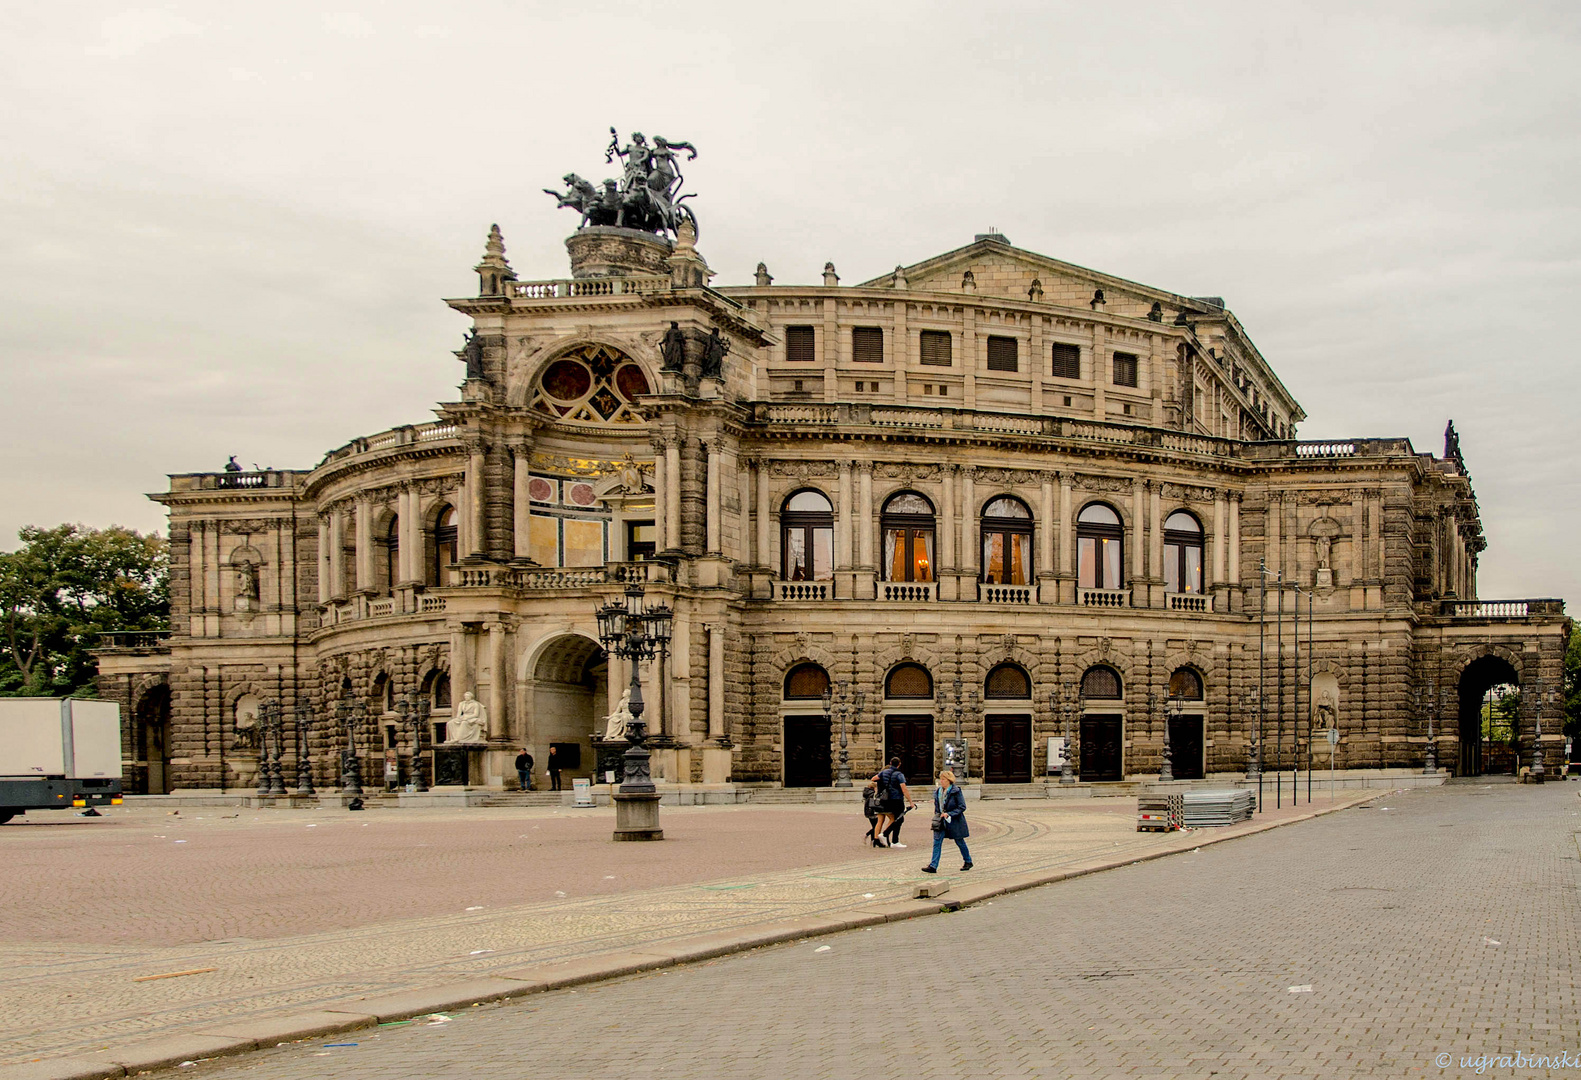 Altstadt Dresden-Semperoper